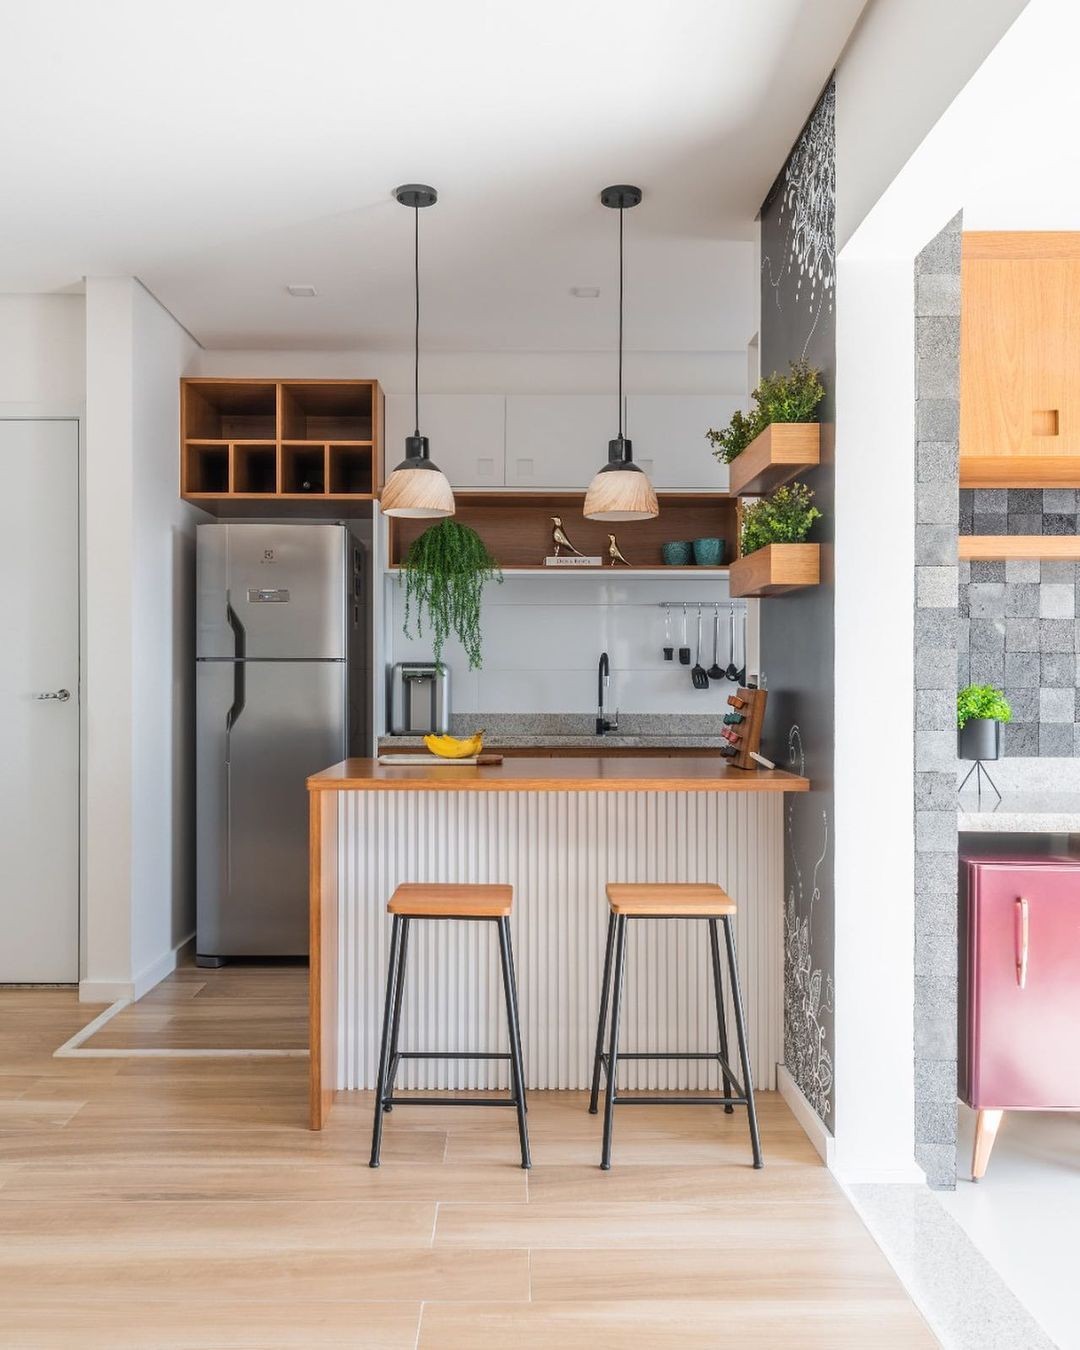 Décor do dia: cozinha compacta integrada à sala de estar (Foto: Divulgação)